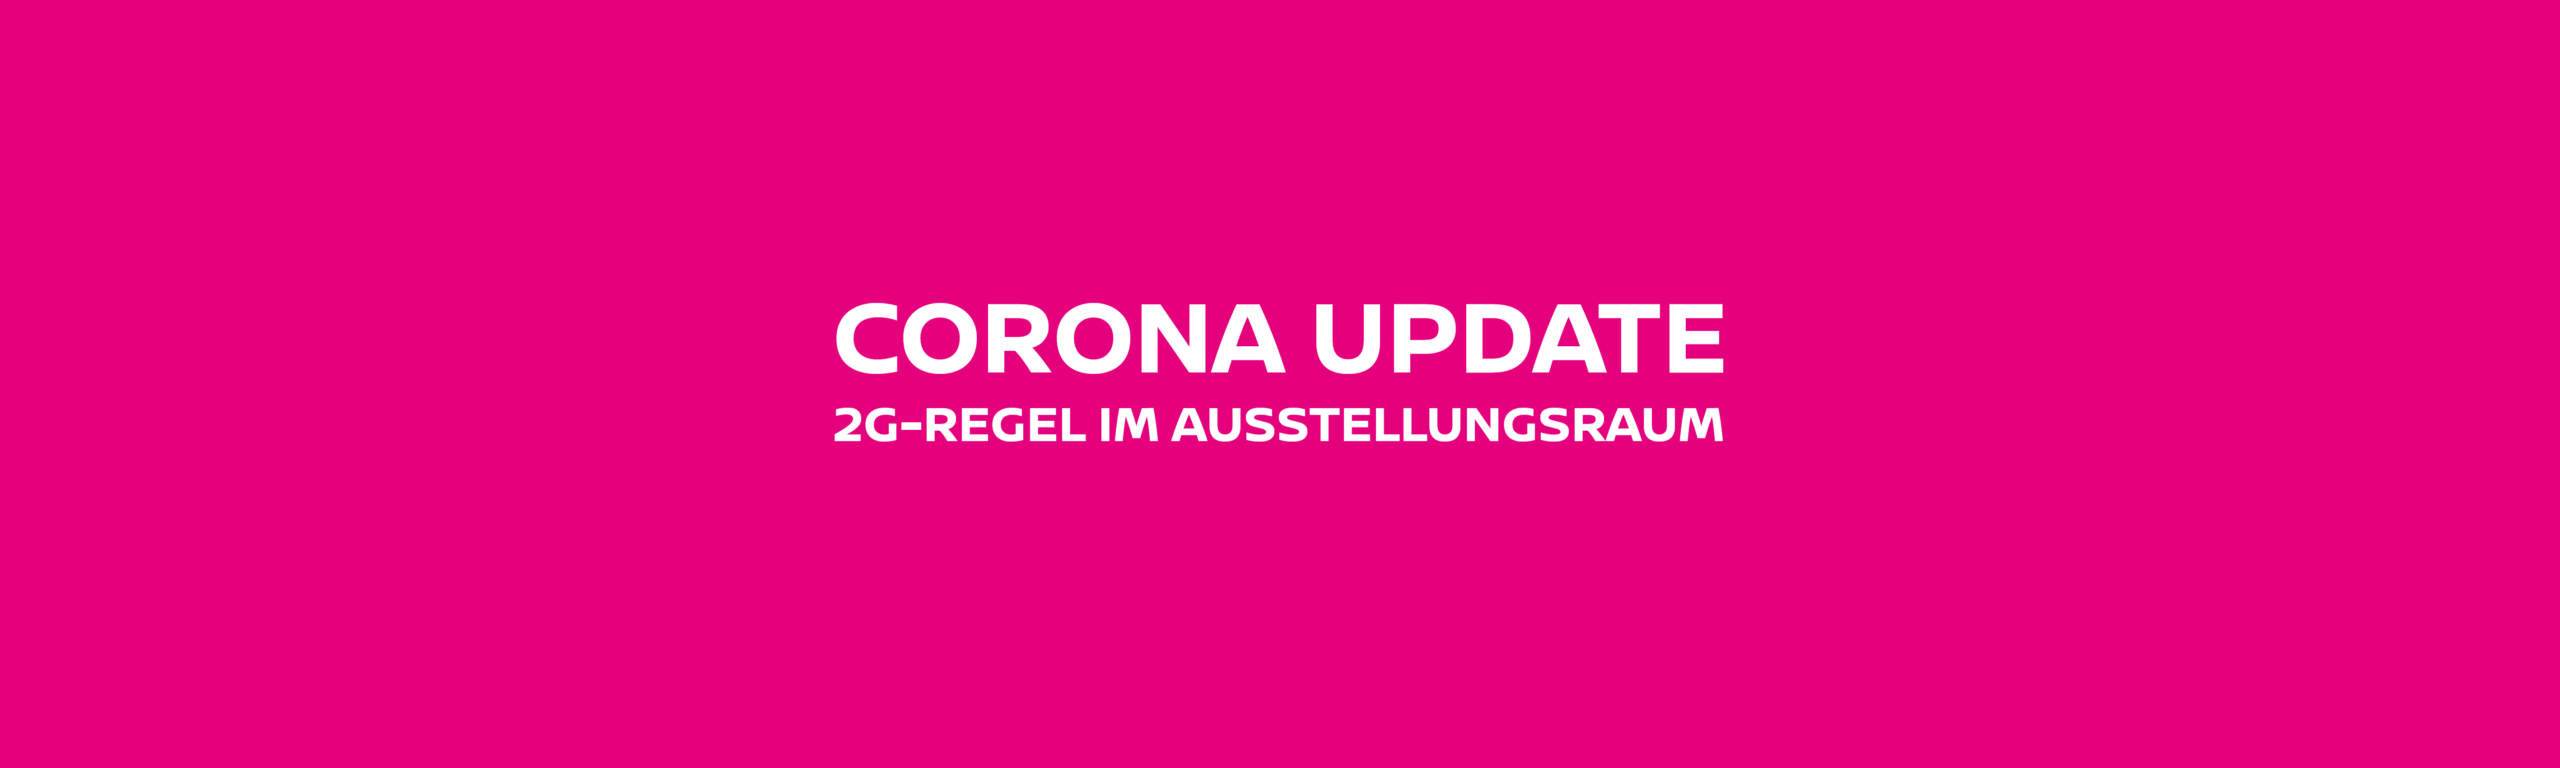 Update Corona: 2G-Regel im Ausstellungsraum